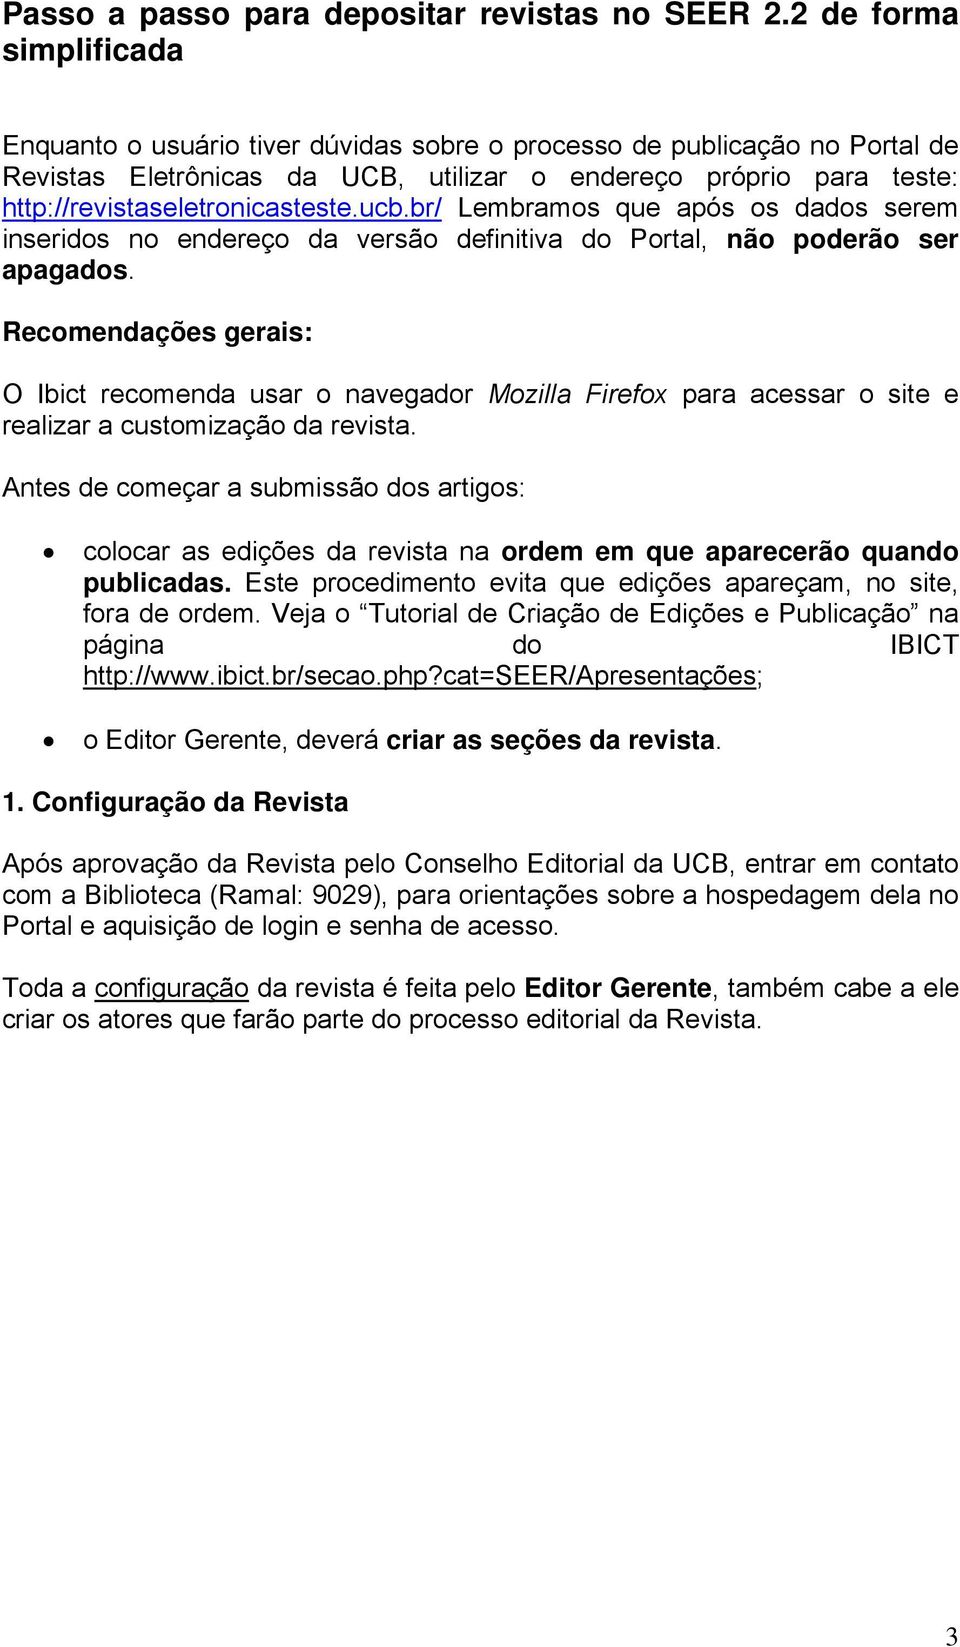 http://revistaseletronicasteste.ucb.br/ Lembramos que após os dados serem inseridos no endereço da versão definitiva do Portal, não poderão ser apagados.